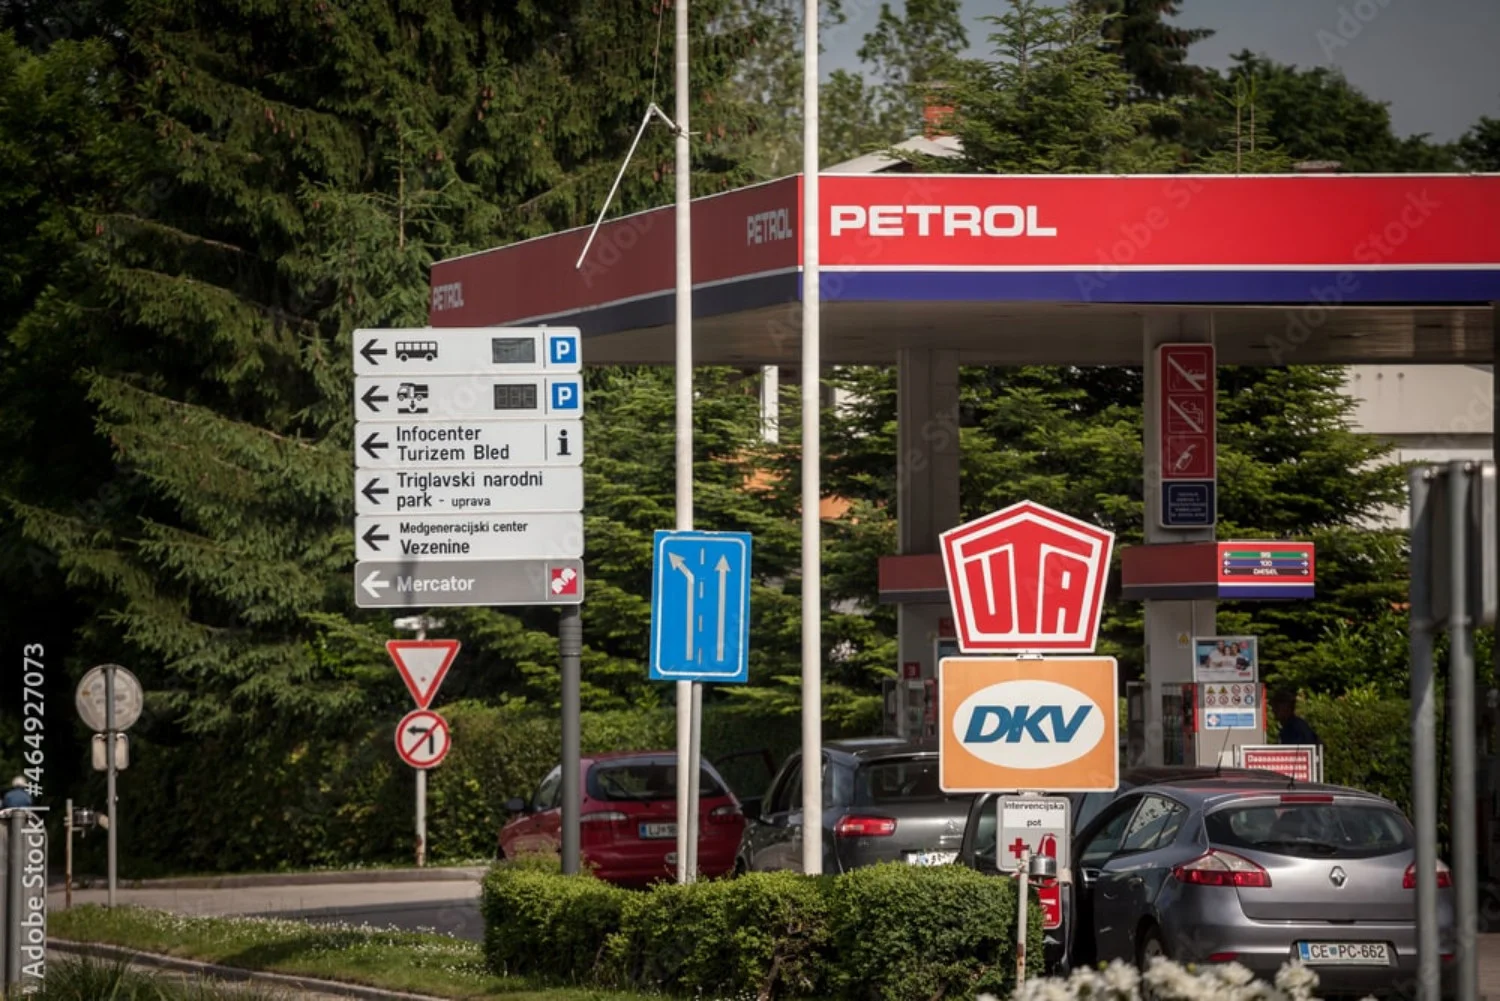 Vodeći brand u Sloveniji, Petrol, smatra se pouzdanim.